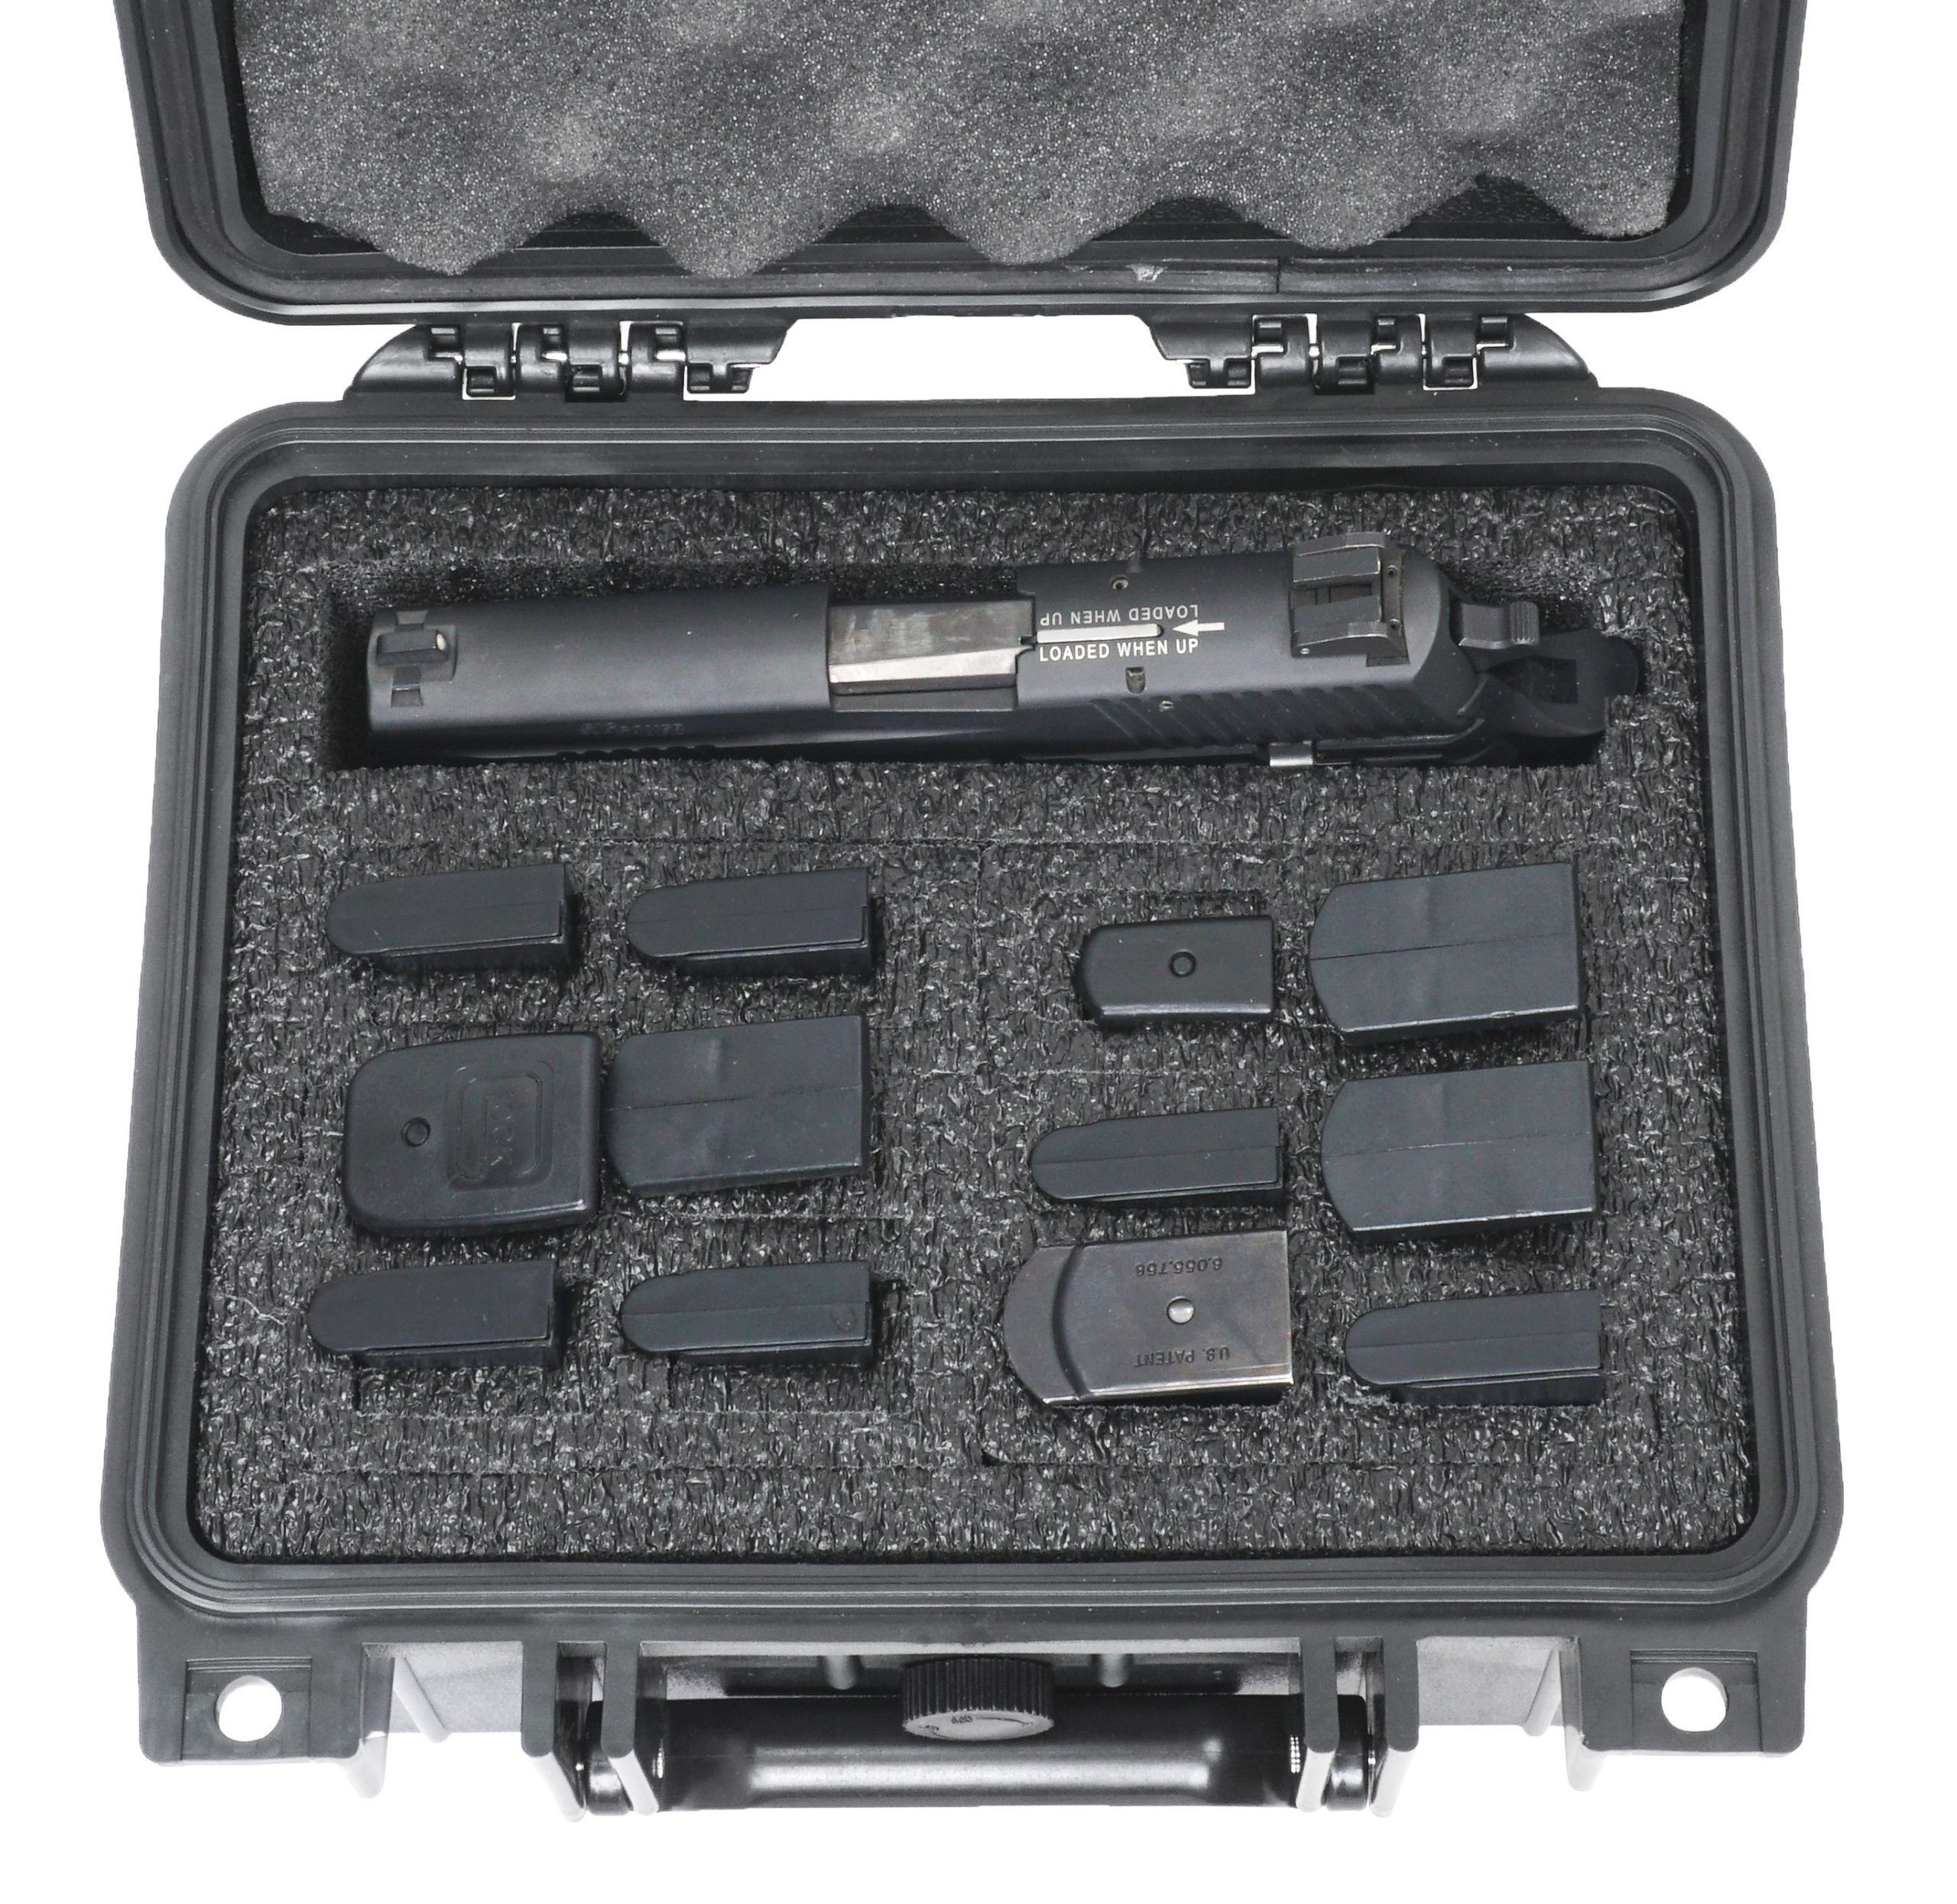 Case Club Glock 19 Waterproof Pistol Case with Pre-Cut Foam